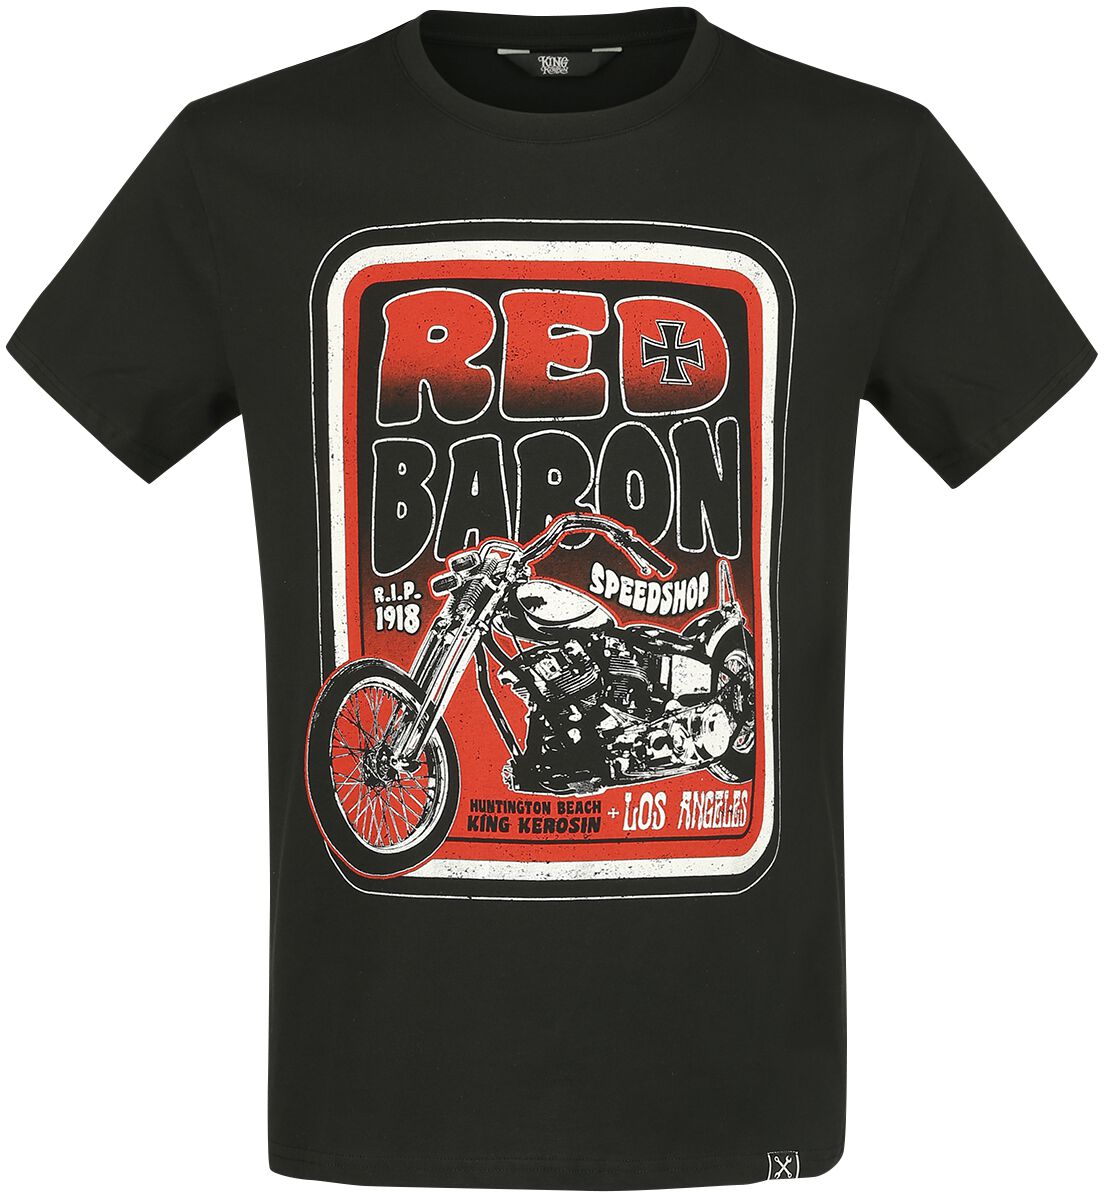 King Kerosin Red Baron T-Shirt black